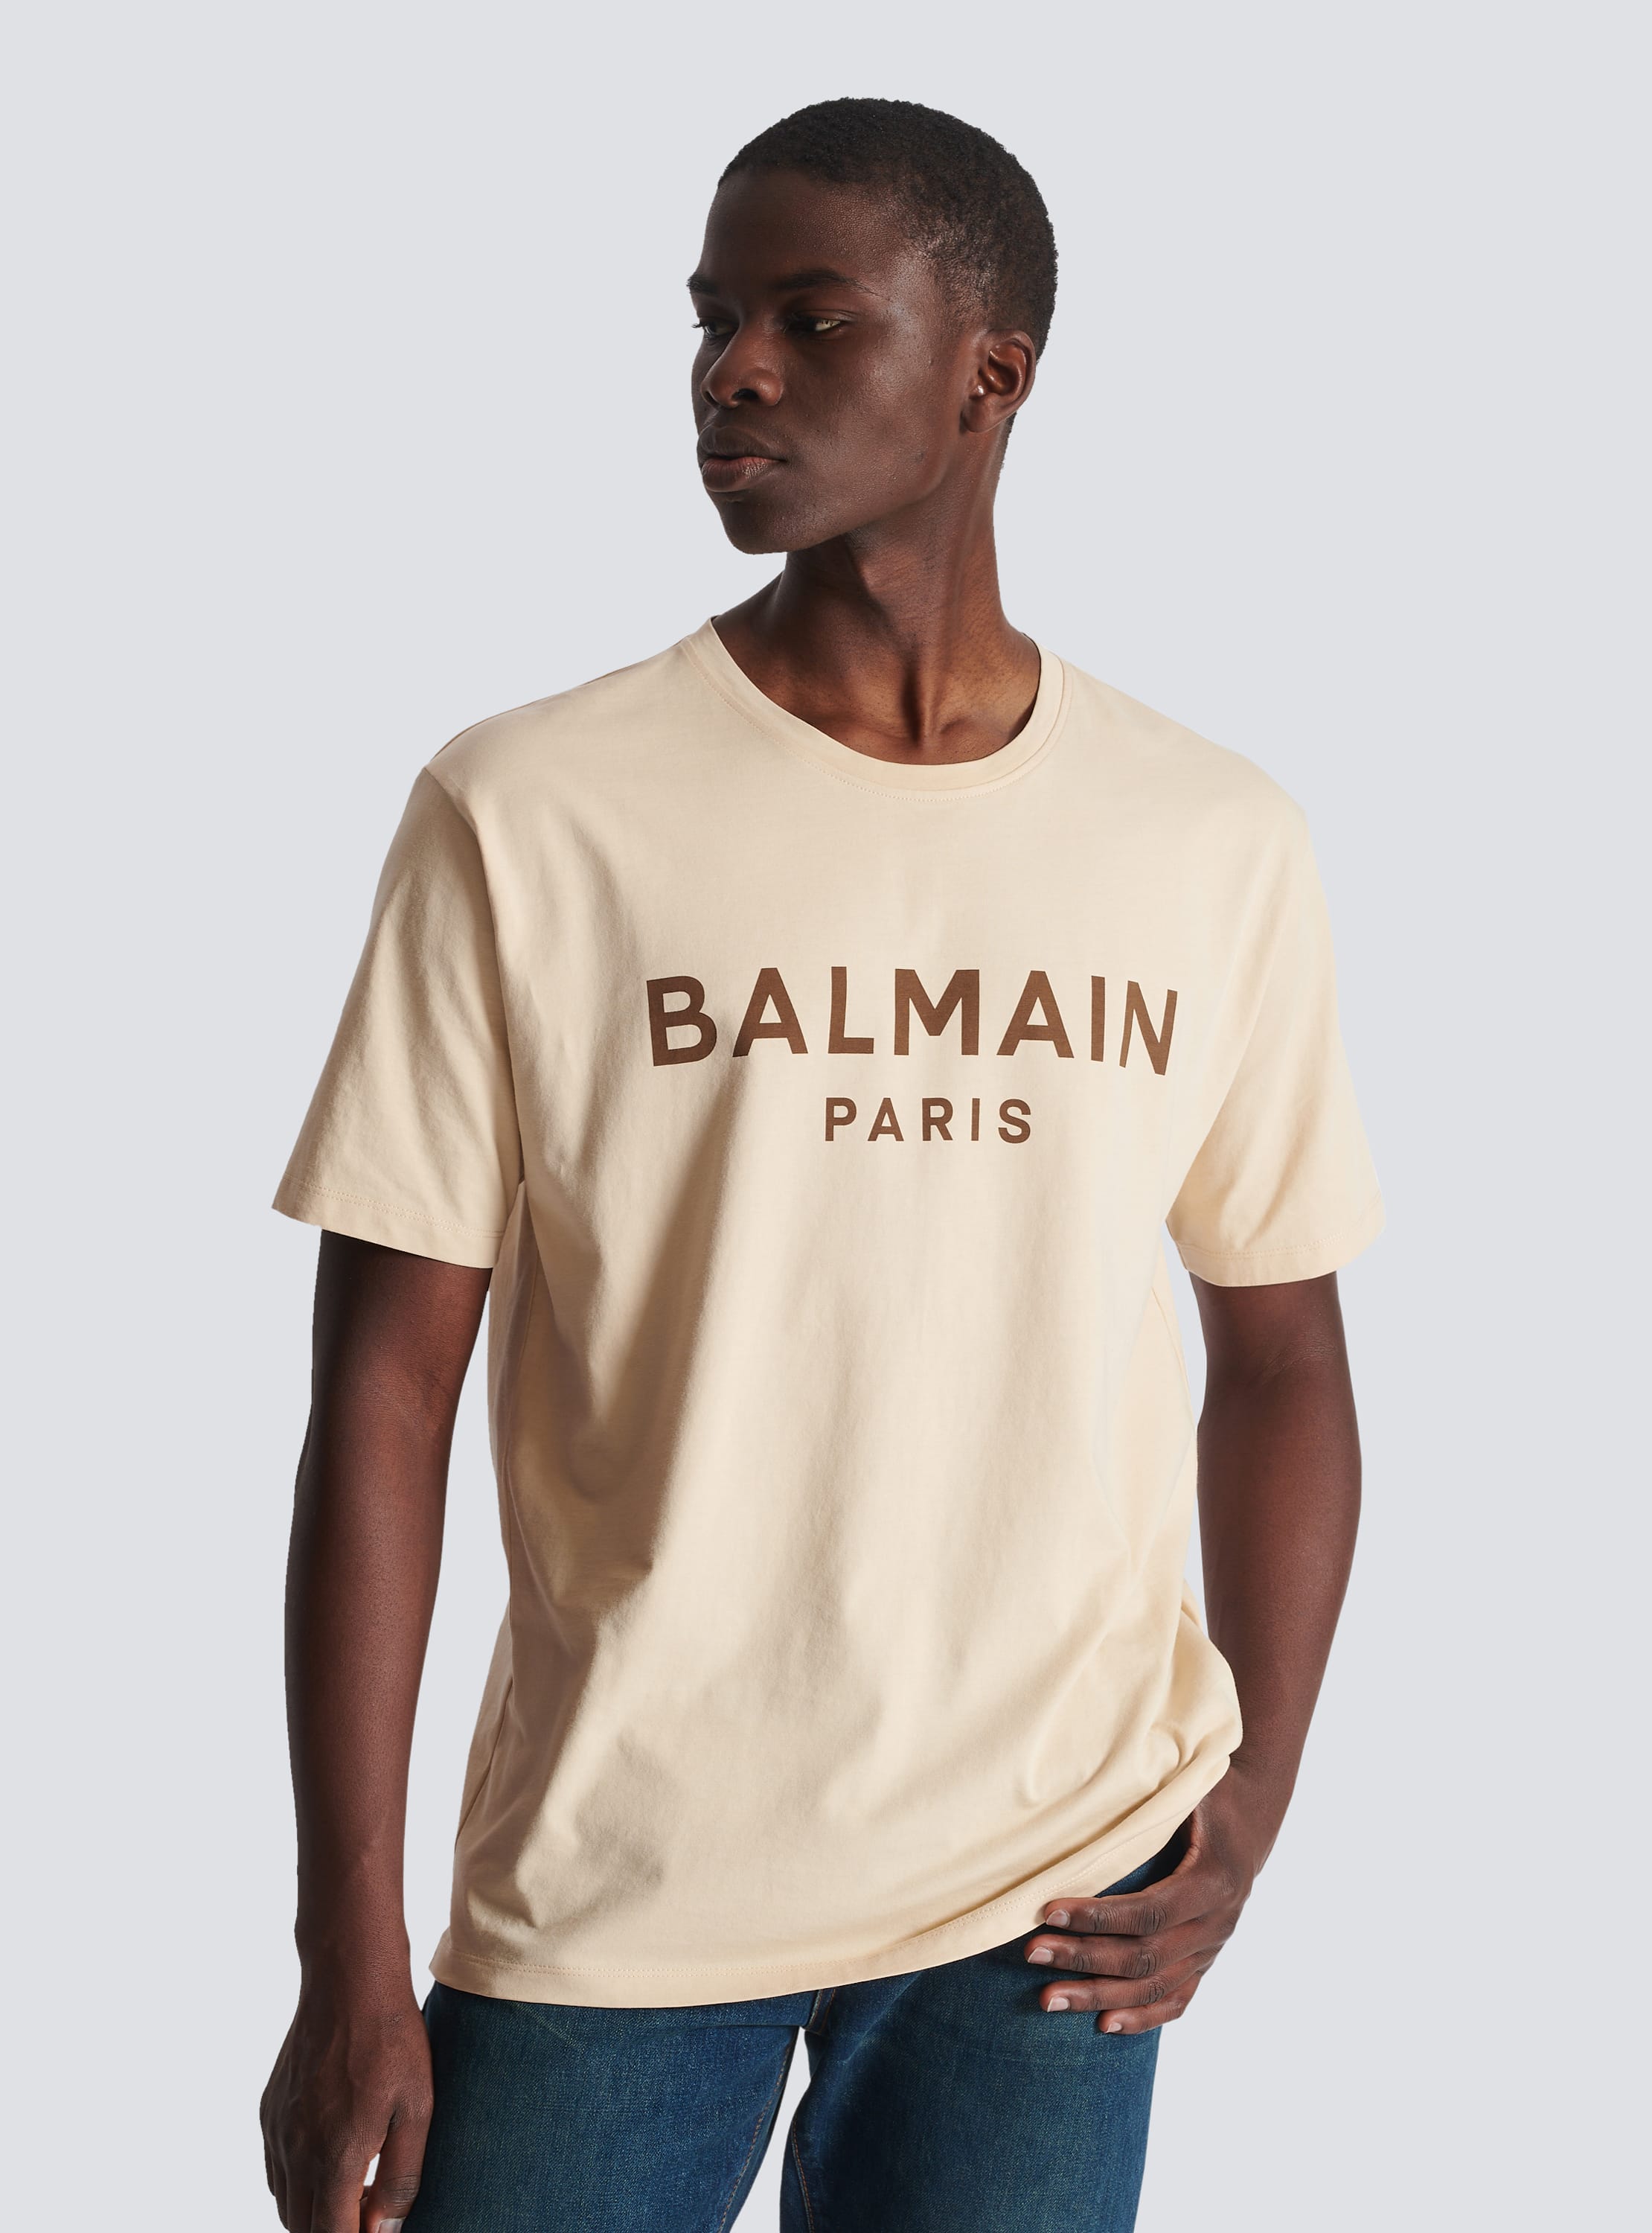 Balmain Paris print beige - Men